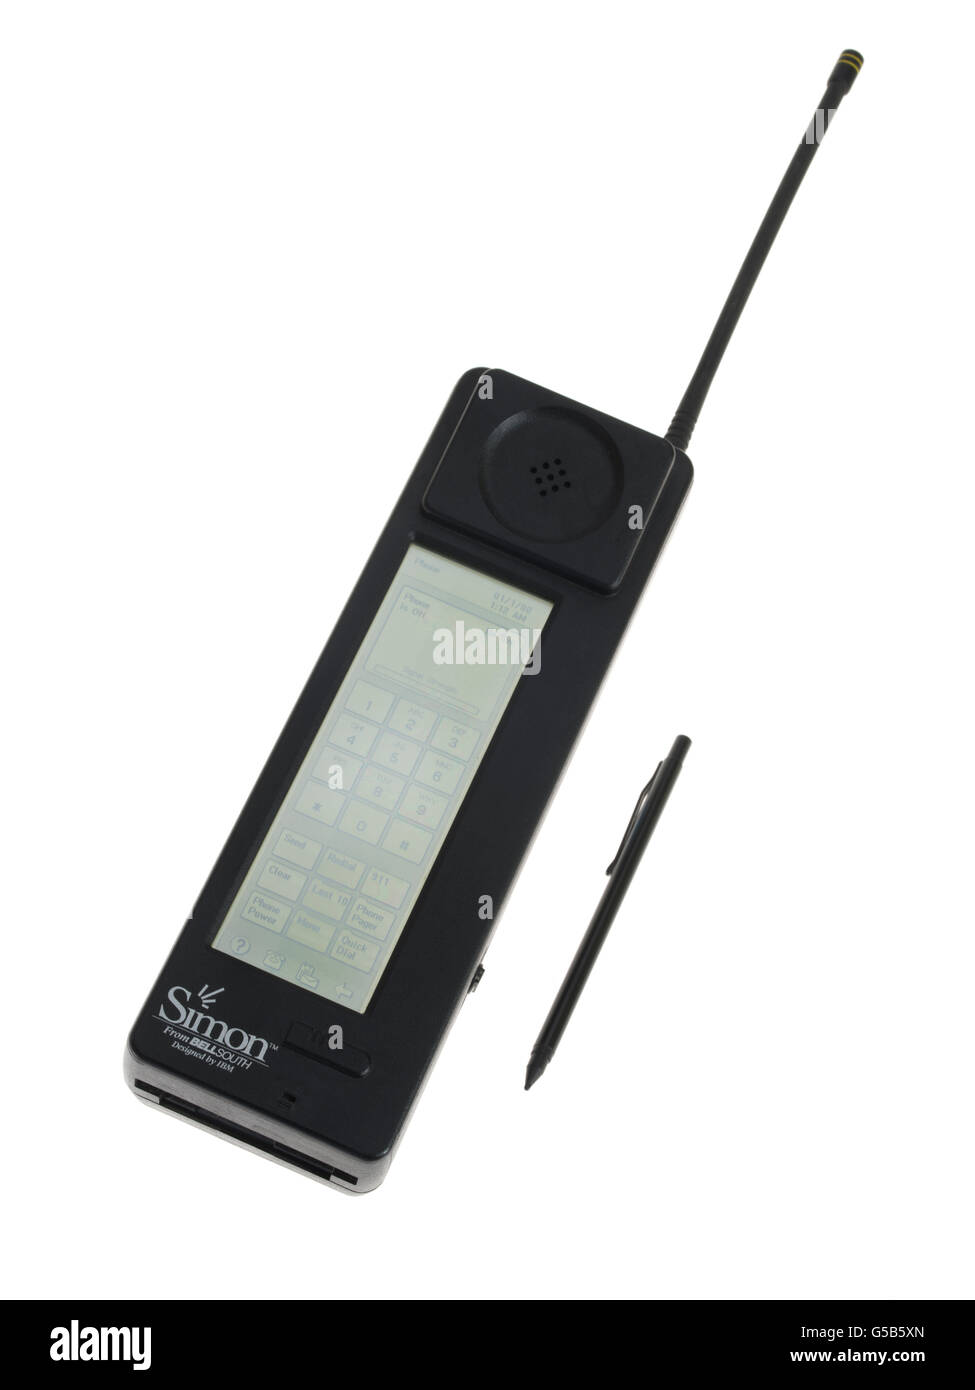 IBM Simon Personal Communicator 1. Smartphone, entworfen von IBM für Bell South 16. August 1994 veröffentlicht. PDA & touchscreen Stockfoto